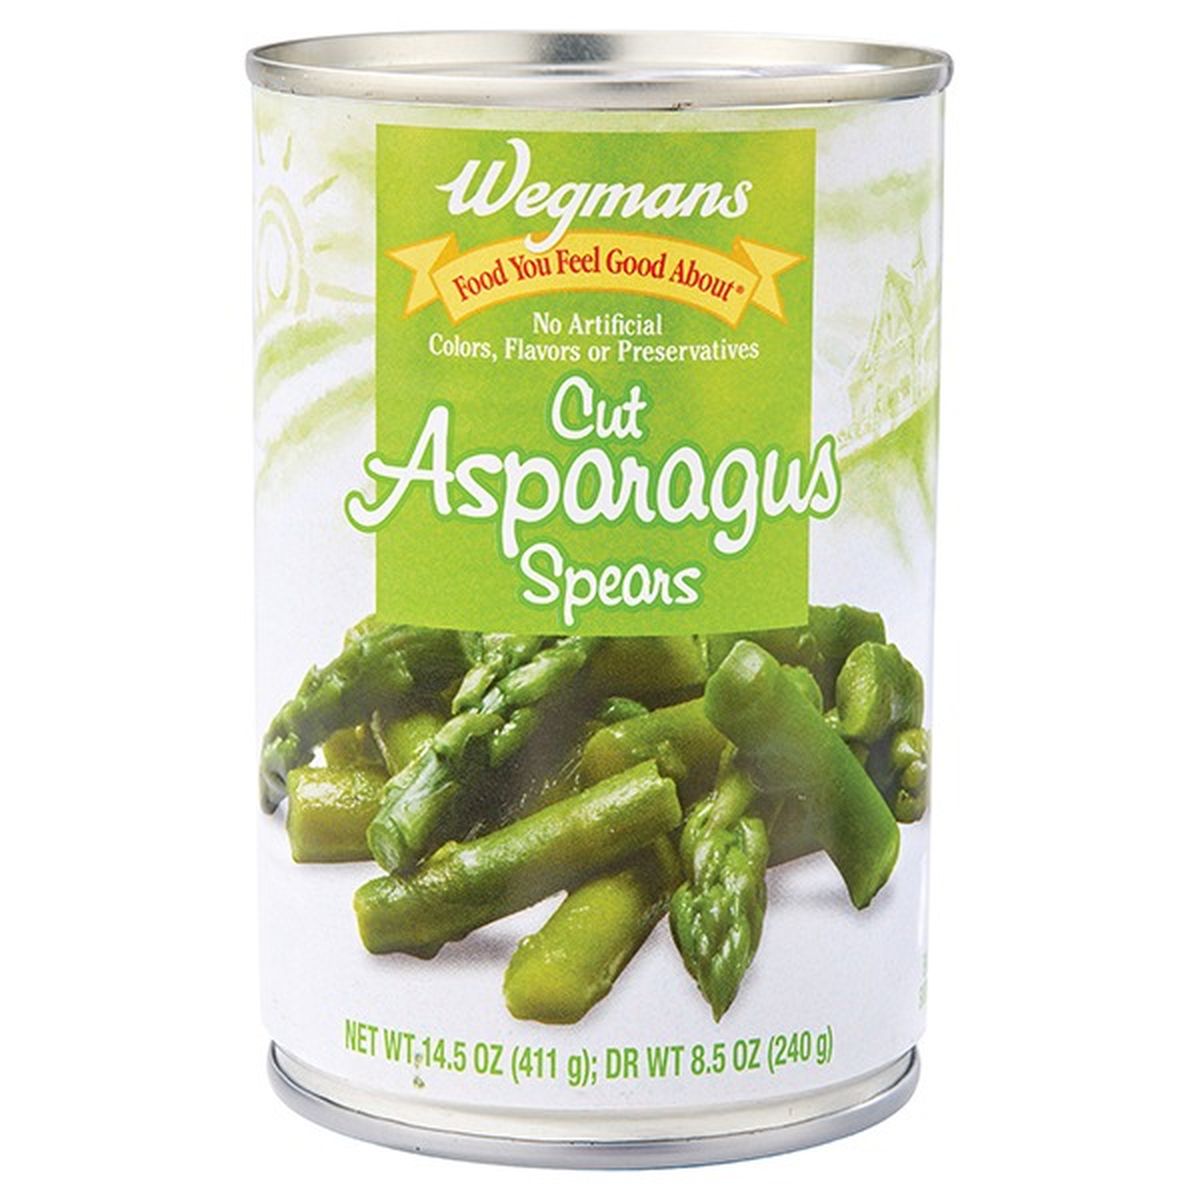 Calories in Wegmans Asparagus, Cut Spears & Tips